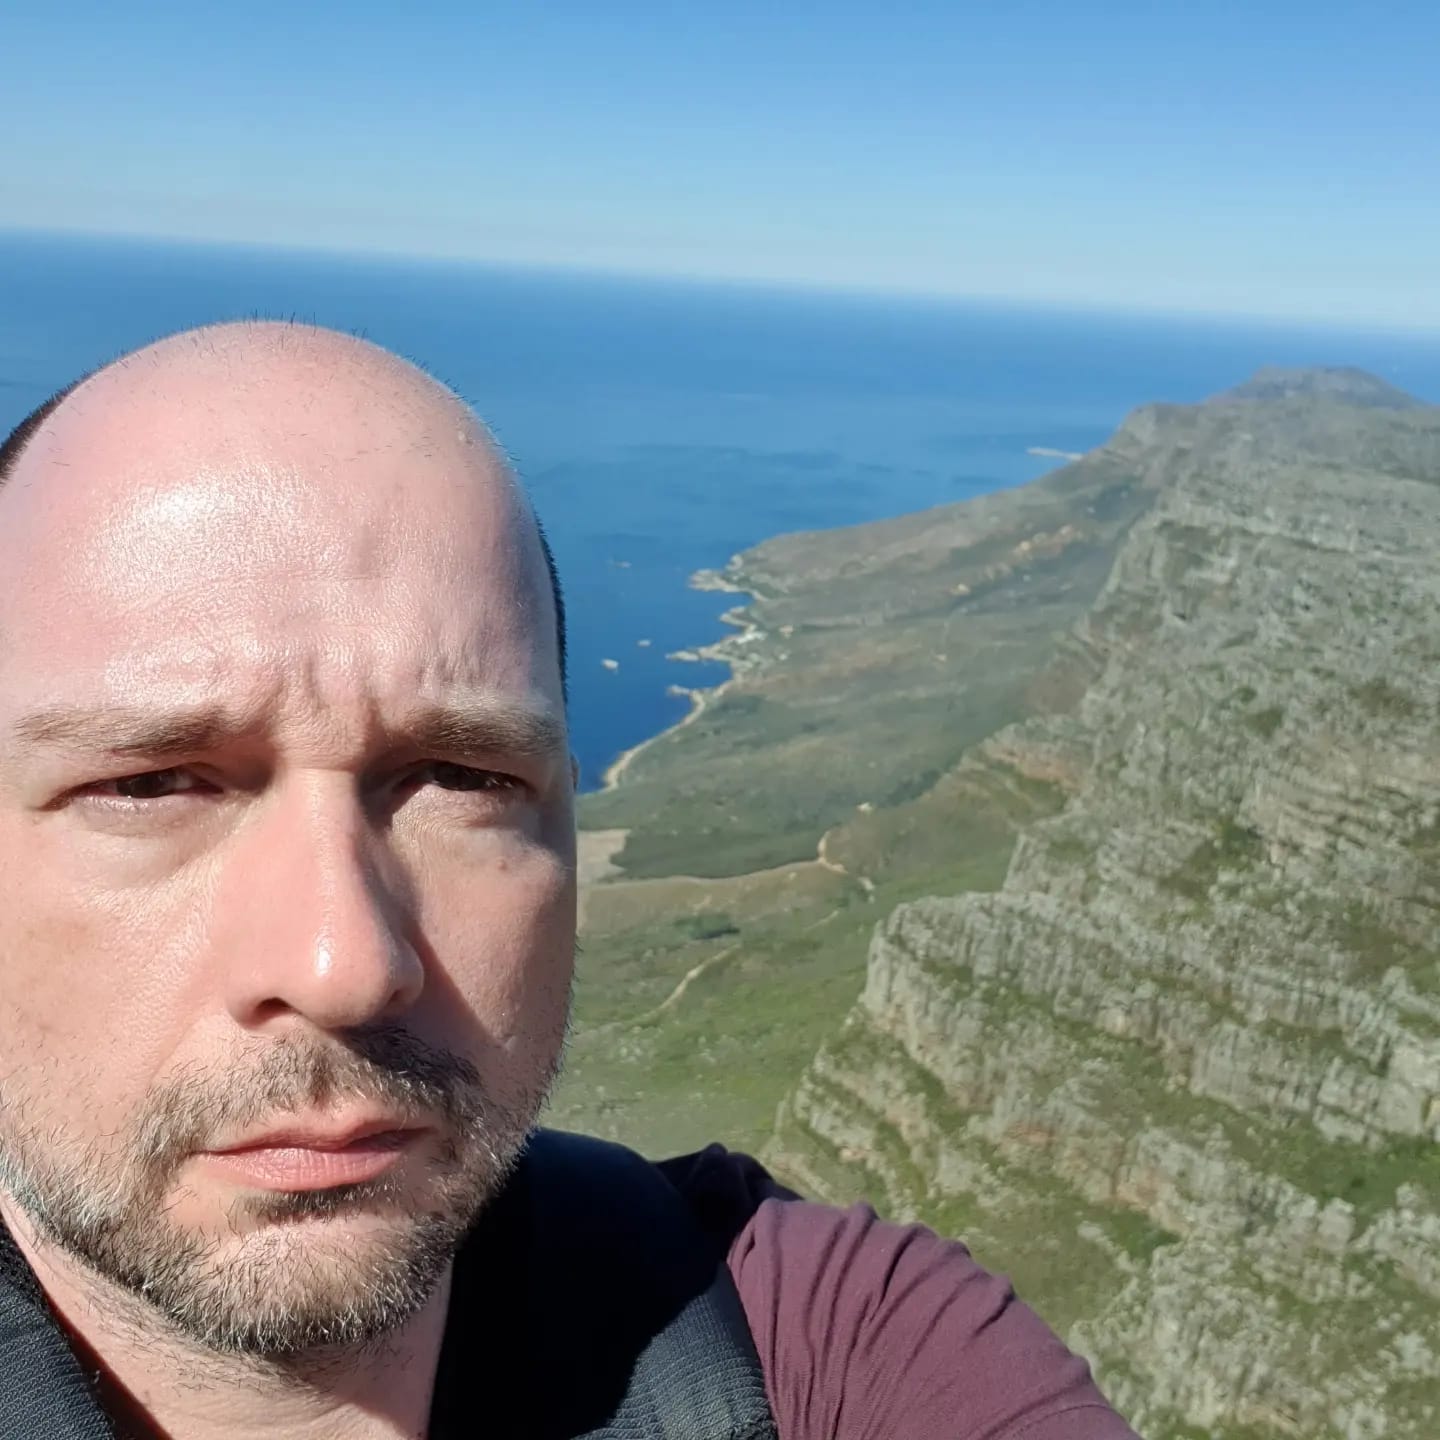 Fabricio Pereira da Silva, professor da Universidade Federal do Estado do Rio de Janeiro, no topo de uma montanha, com a vista de uma praia em um dia ensolarado ao fundo. Fabricio é um homem branco, calvo, e veste uma camiseta roxa.